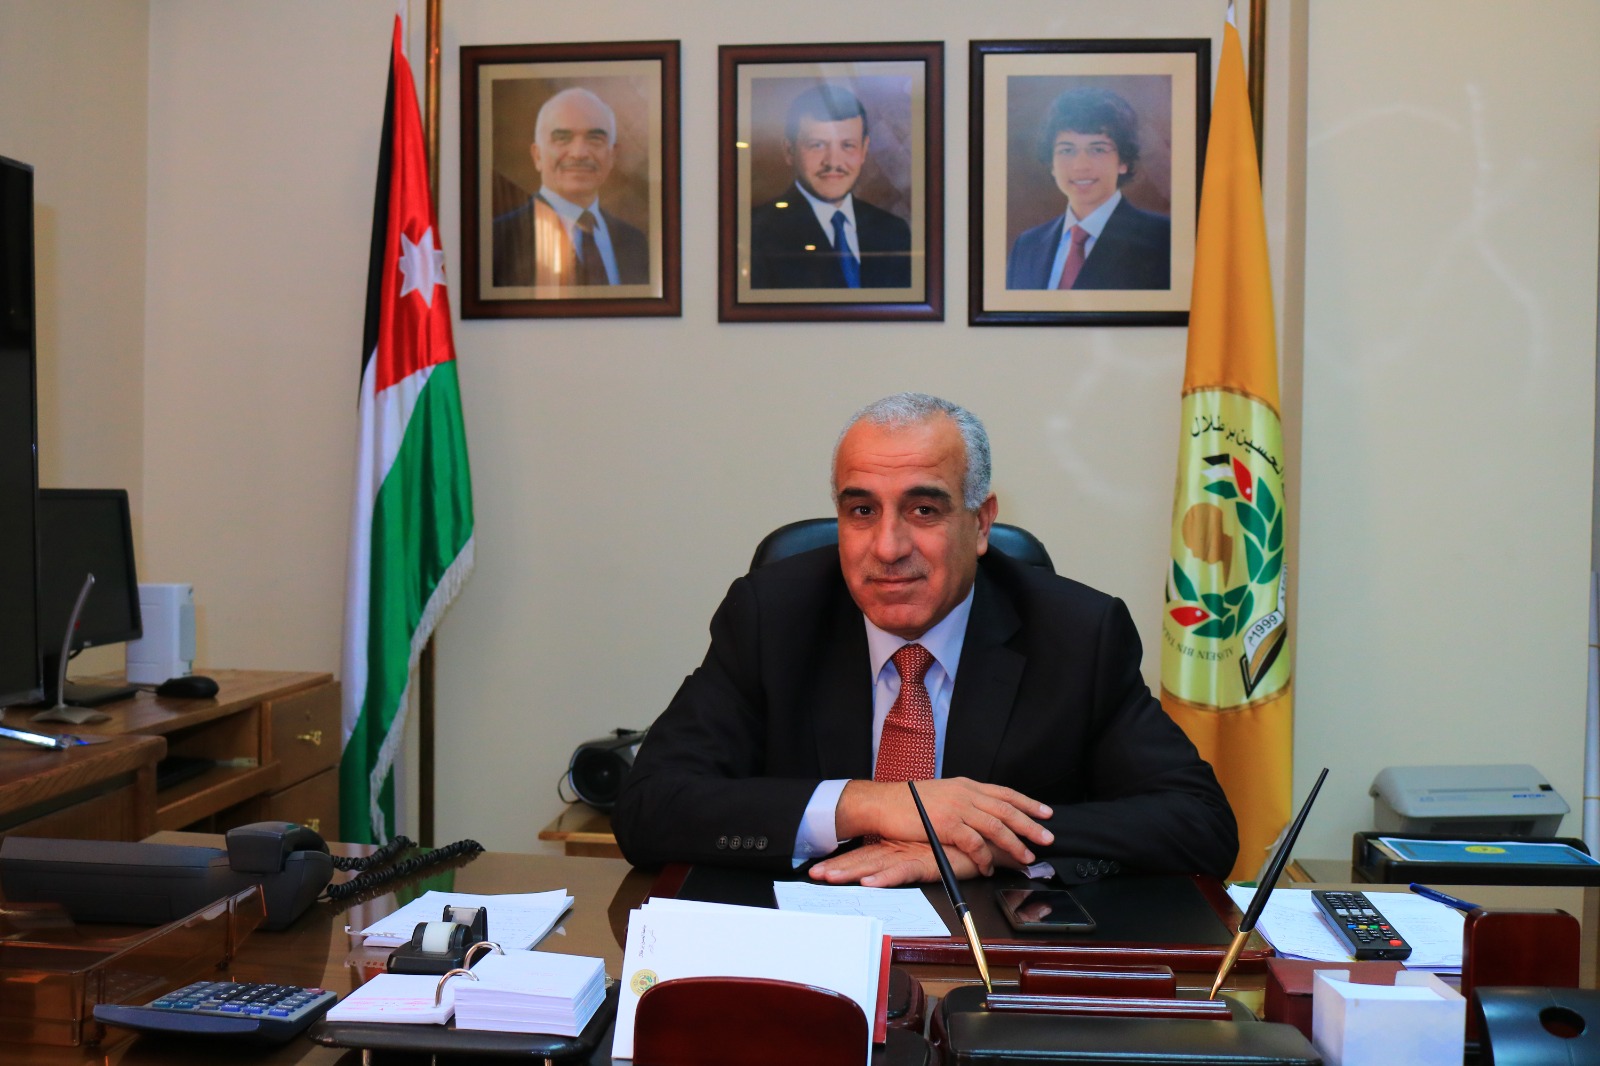  رئيس جامعة الحسين بن طلال يوجه رسالة لطلبة الجامعةبمناسبة بدء العام الدراسي.